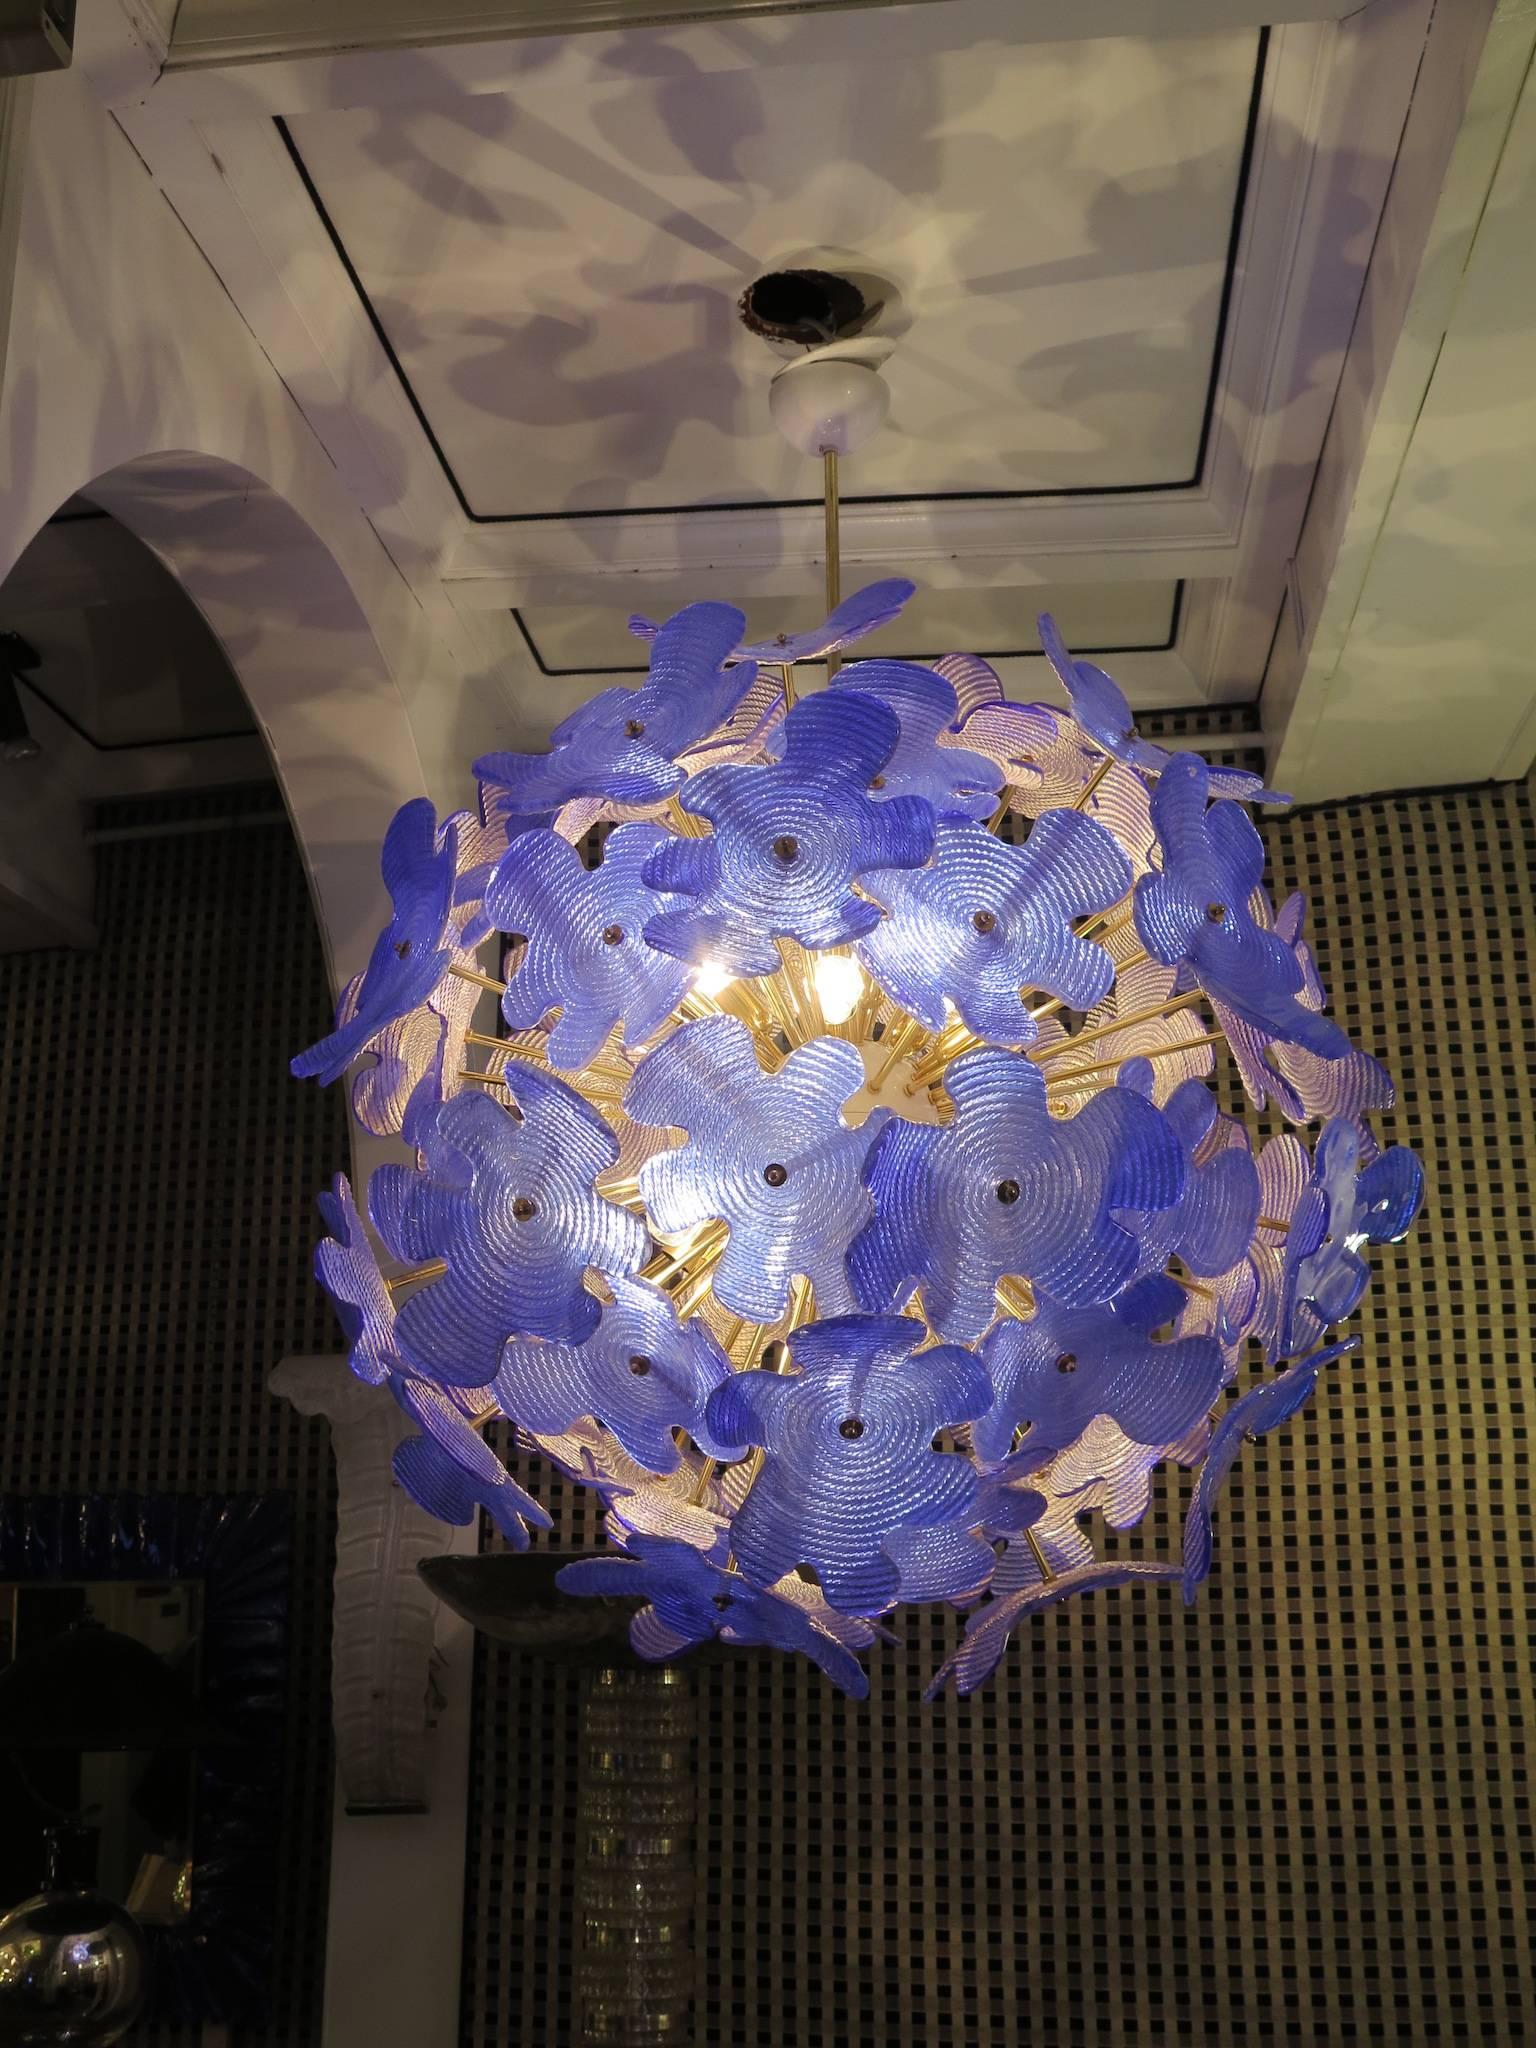 Les grandes fleurs en verre composent ce lustre Murano des années 1970. Un Sputnik classique du milieu du siècle.

Composé d'une grande sphère centrale dans laquelle sont vissées des tiges de laiton, des feuilles de verre sont placées au-dessus des